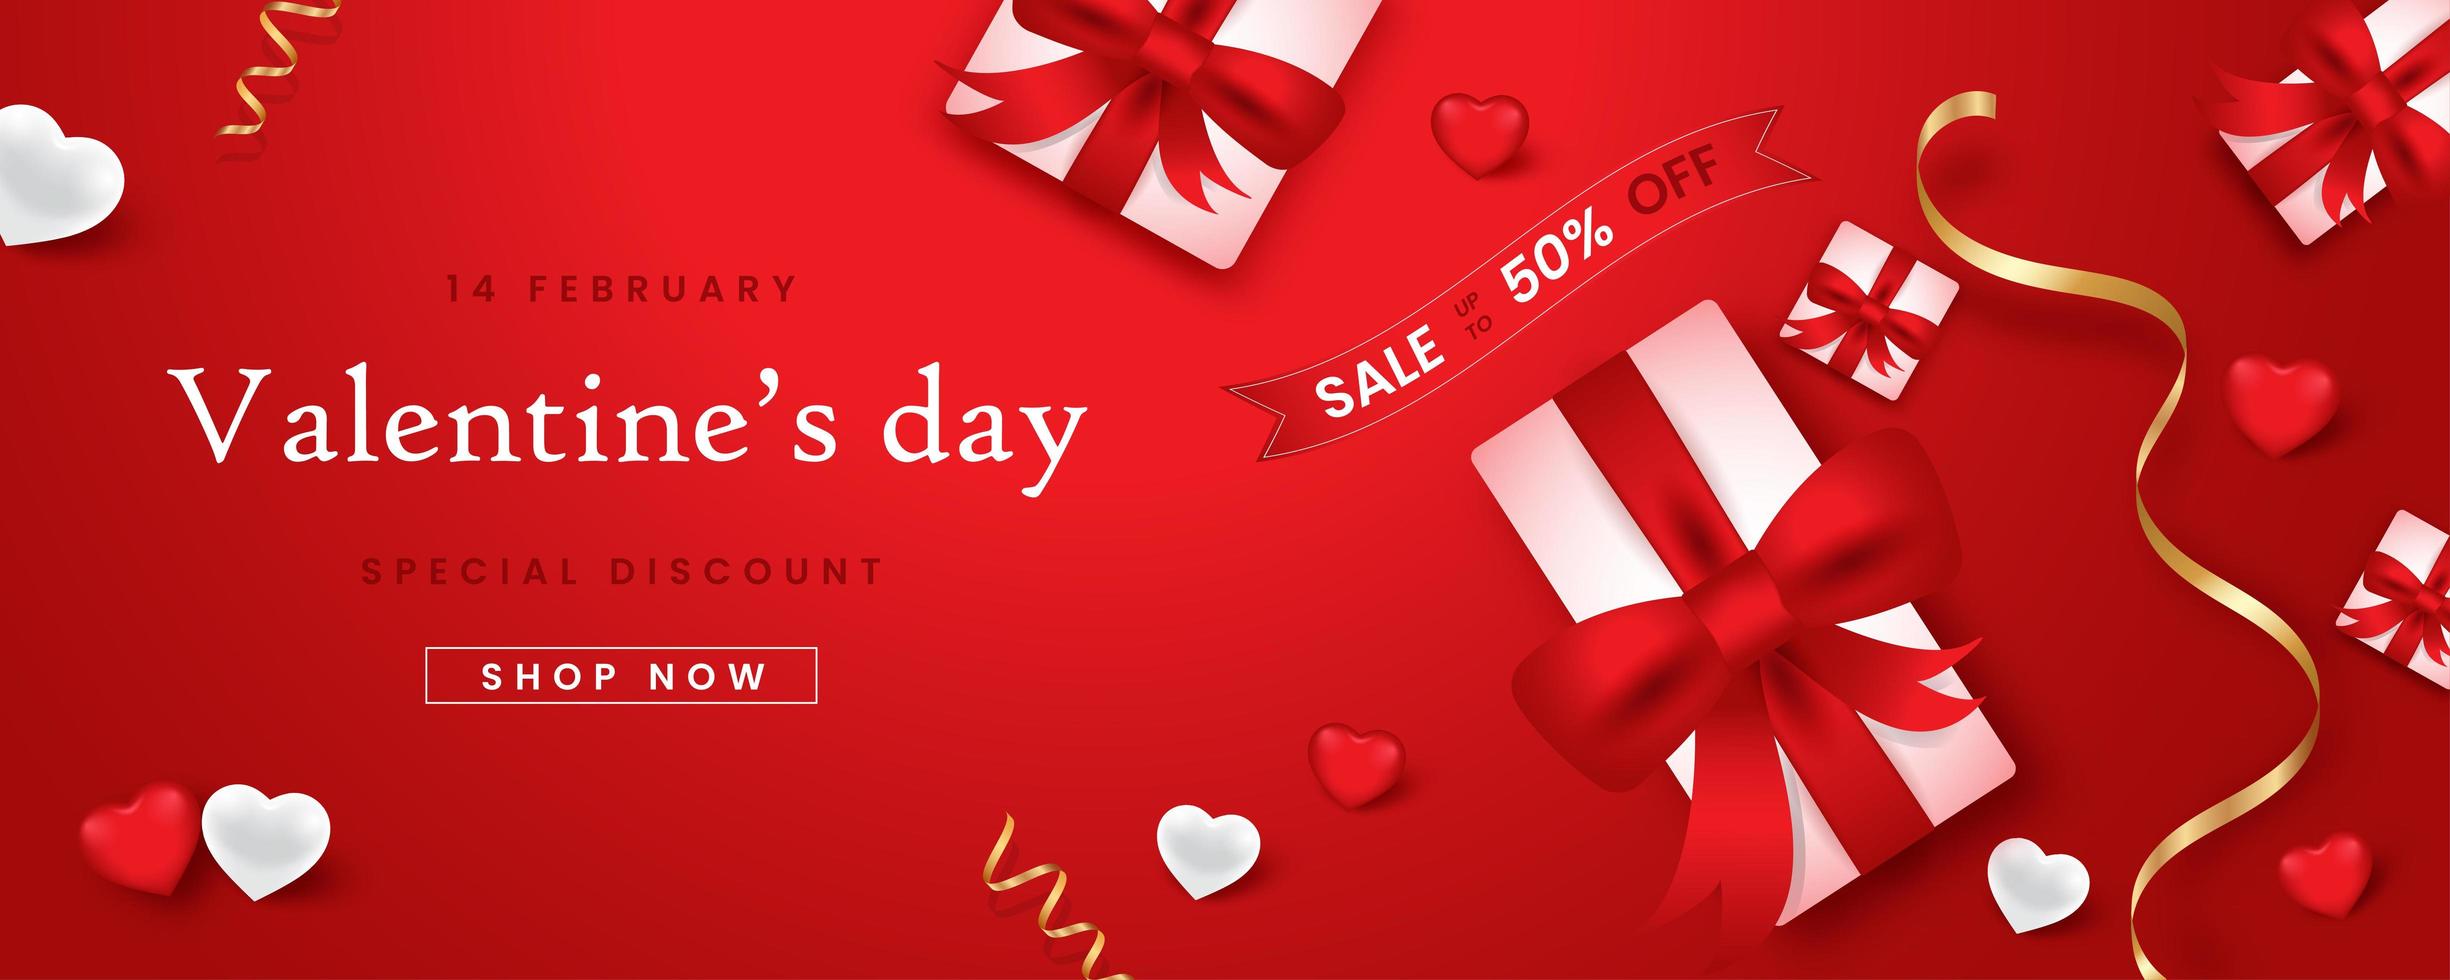 banner web promocional para la venta del día de san valentín. hermoso fondo con tela de color rojo. vector